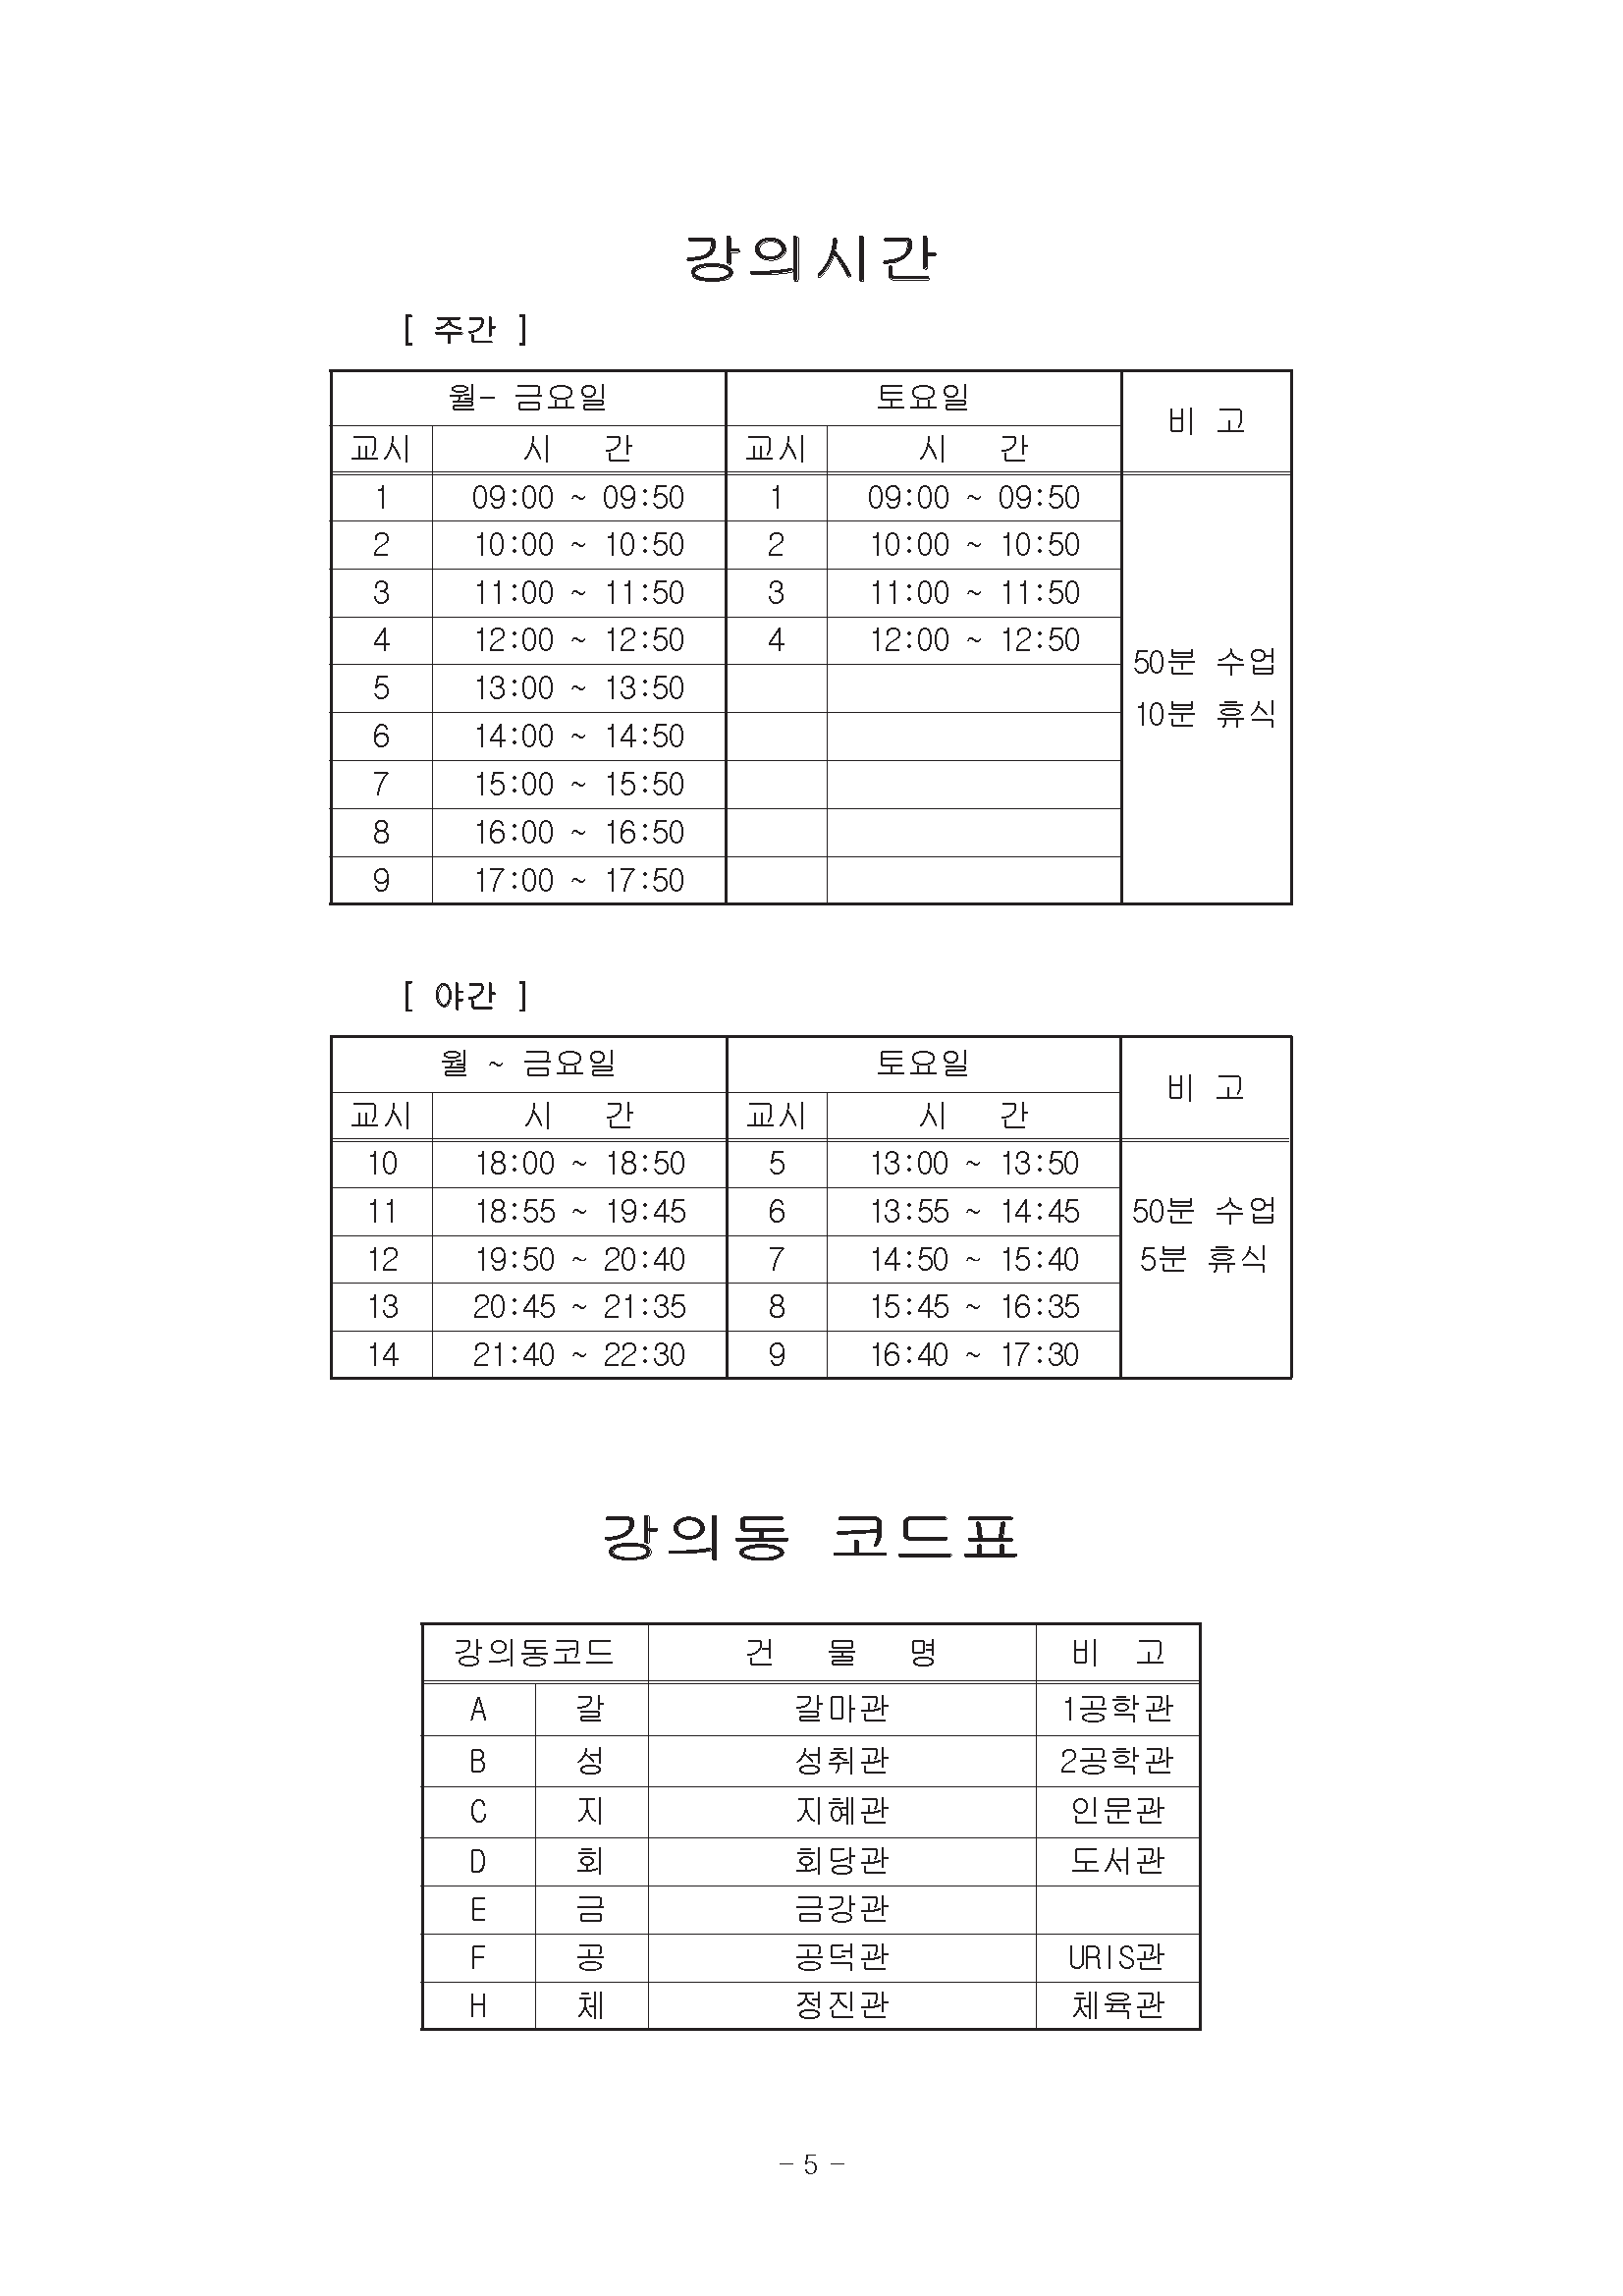 0302-2020학년도 1학기 강의시간표(교무팀_김동욱)5.png